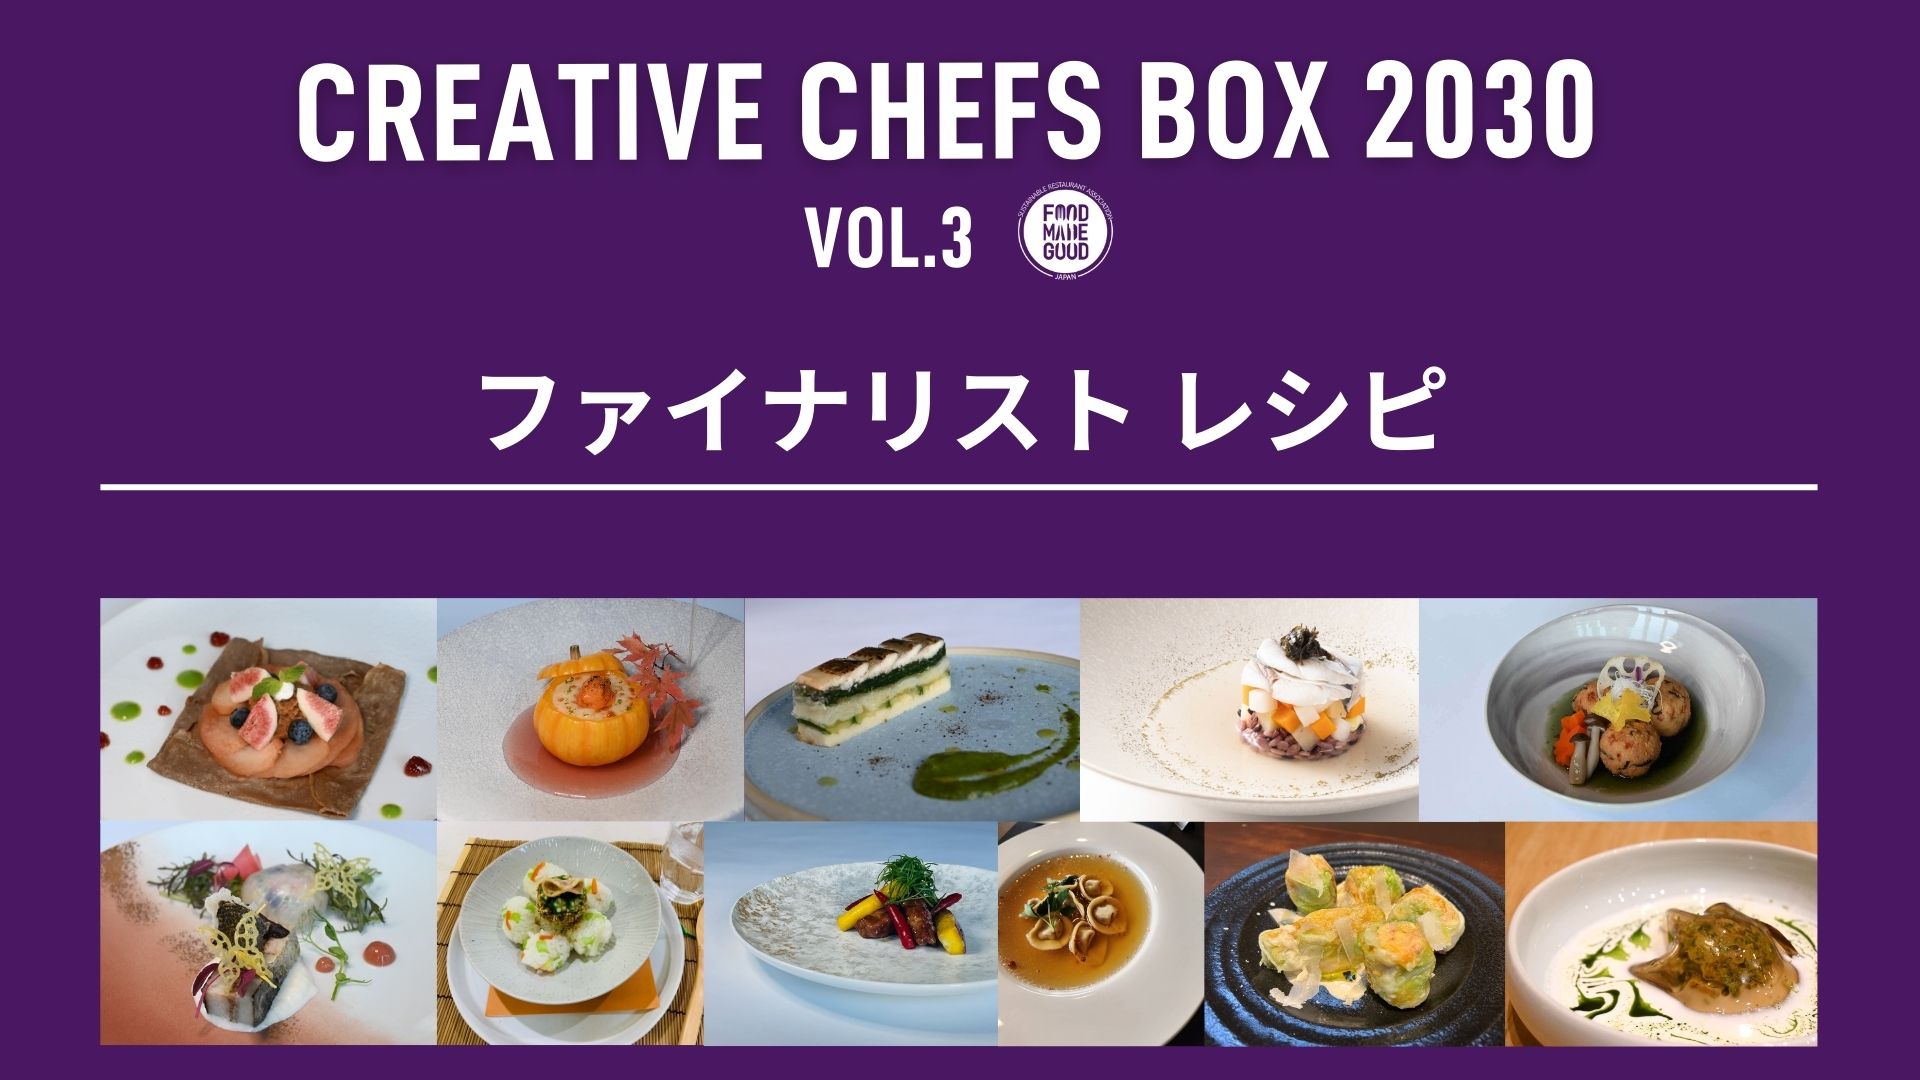 CREATIVE CHEFS BOX 2030 Vol.3「ファイナリストレシピ」